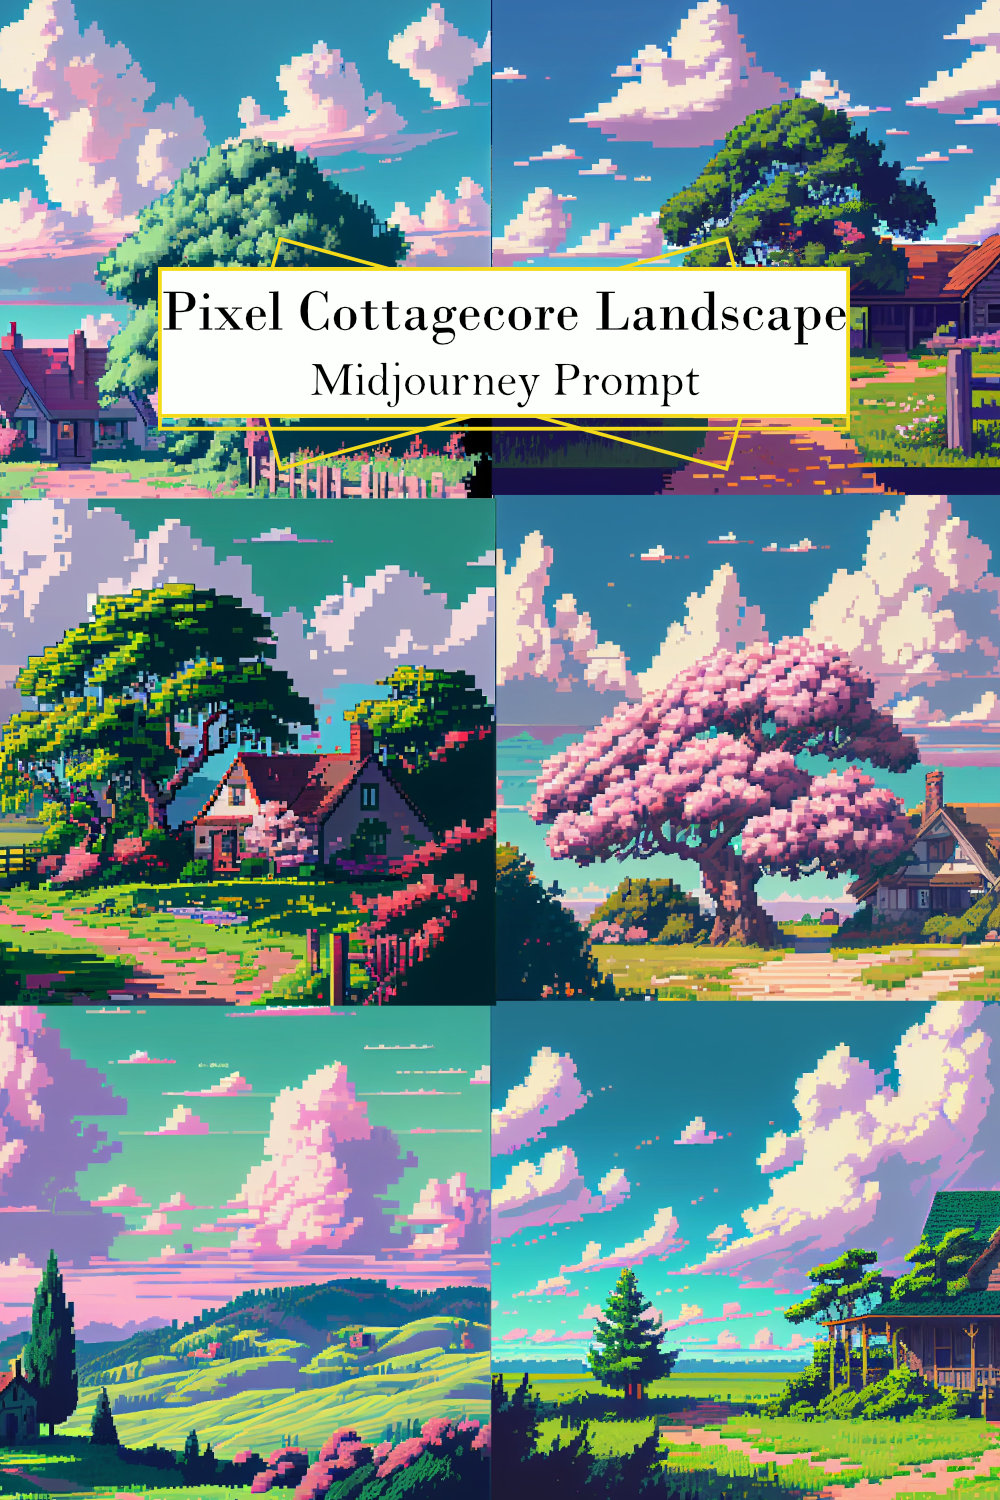 PIxel Cottagecore Landscape Midjourney Prompt pinterest preview image.